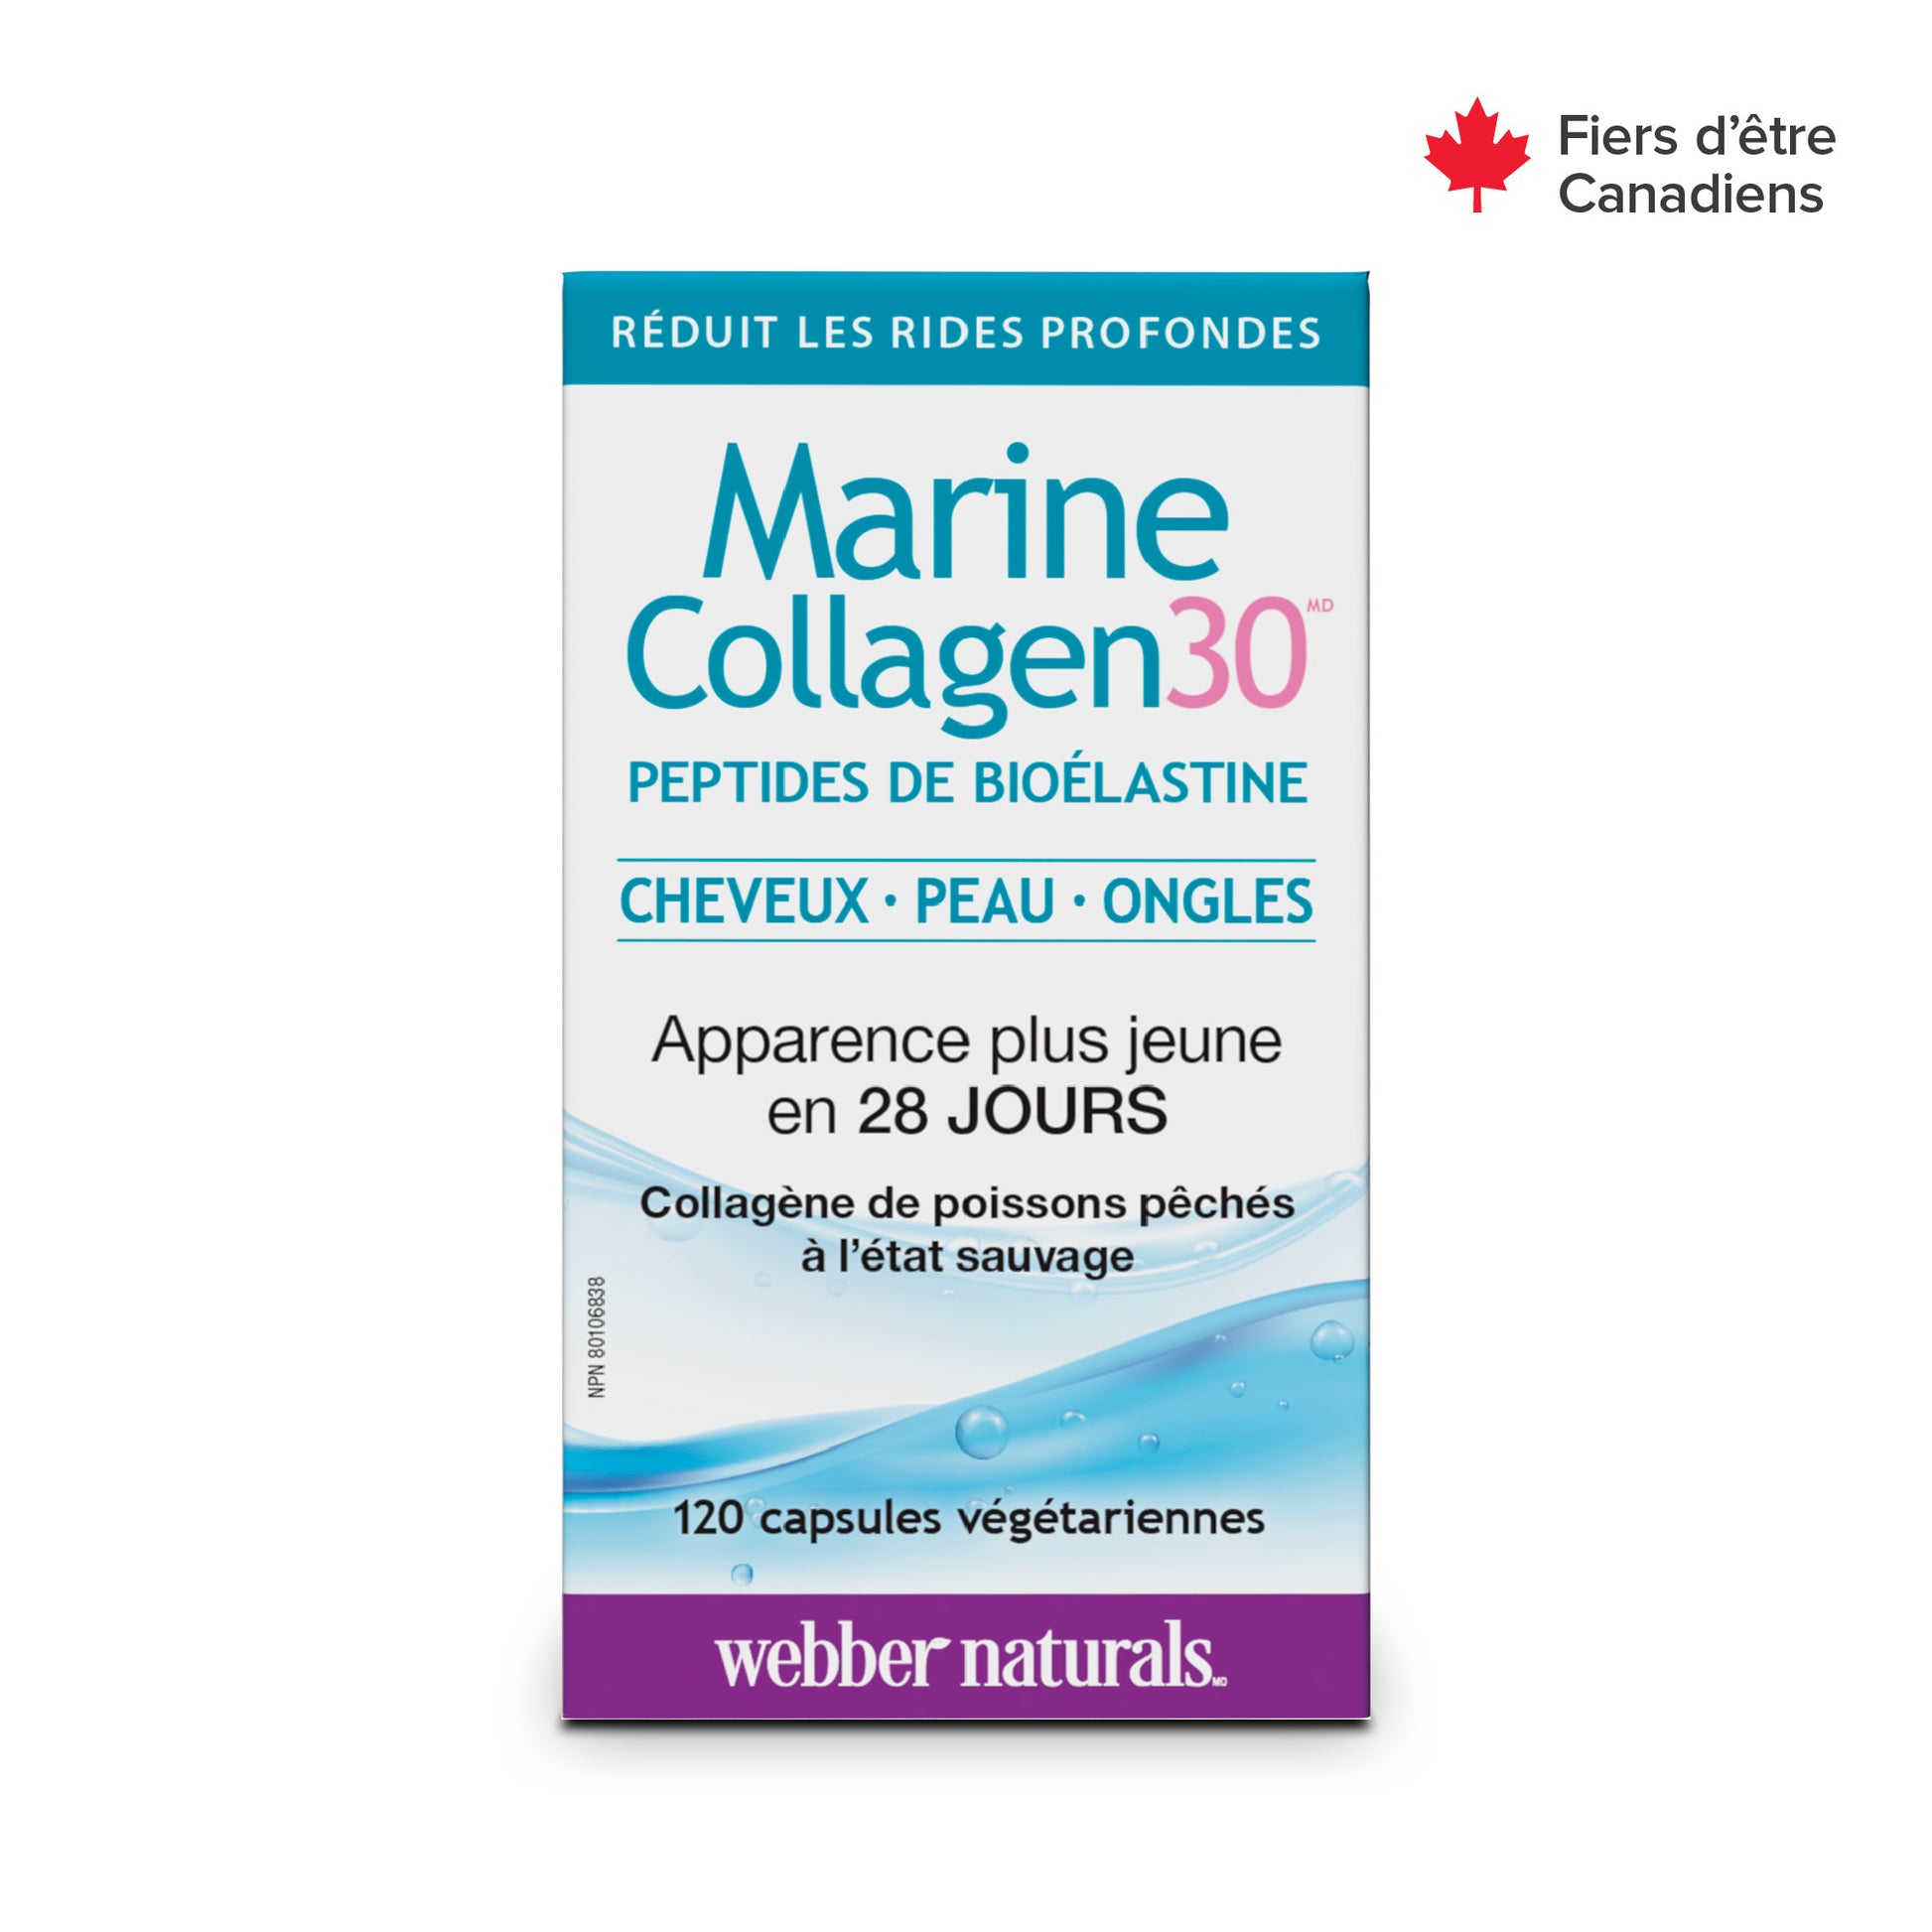 Marine Collagen30(MD) peptides de bioélastine for Webber Naturals|v|hi-res|WN3657